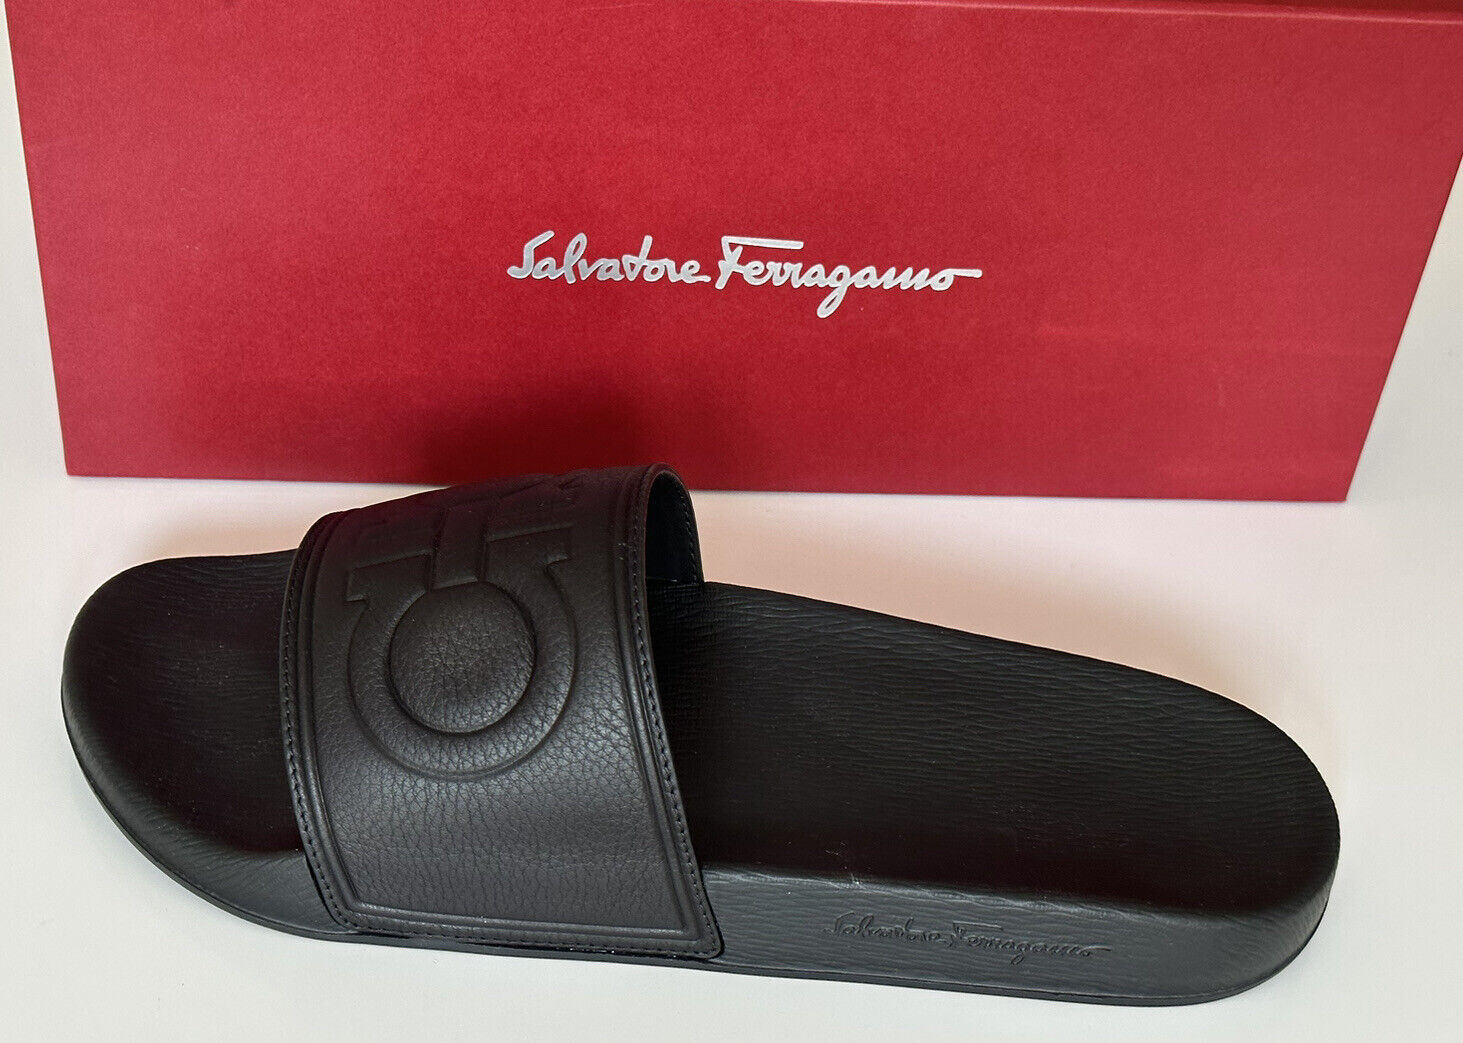 Мужские черные резиновые сандалии Salvatore Ferragamo за 330 долларов США ТОЛЬКО ДЛЯ ЛЕВОЙ НОГИ 10 шт. США